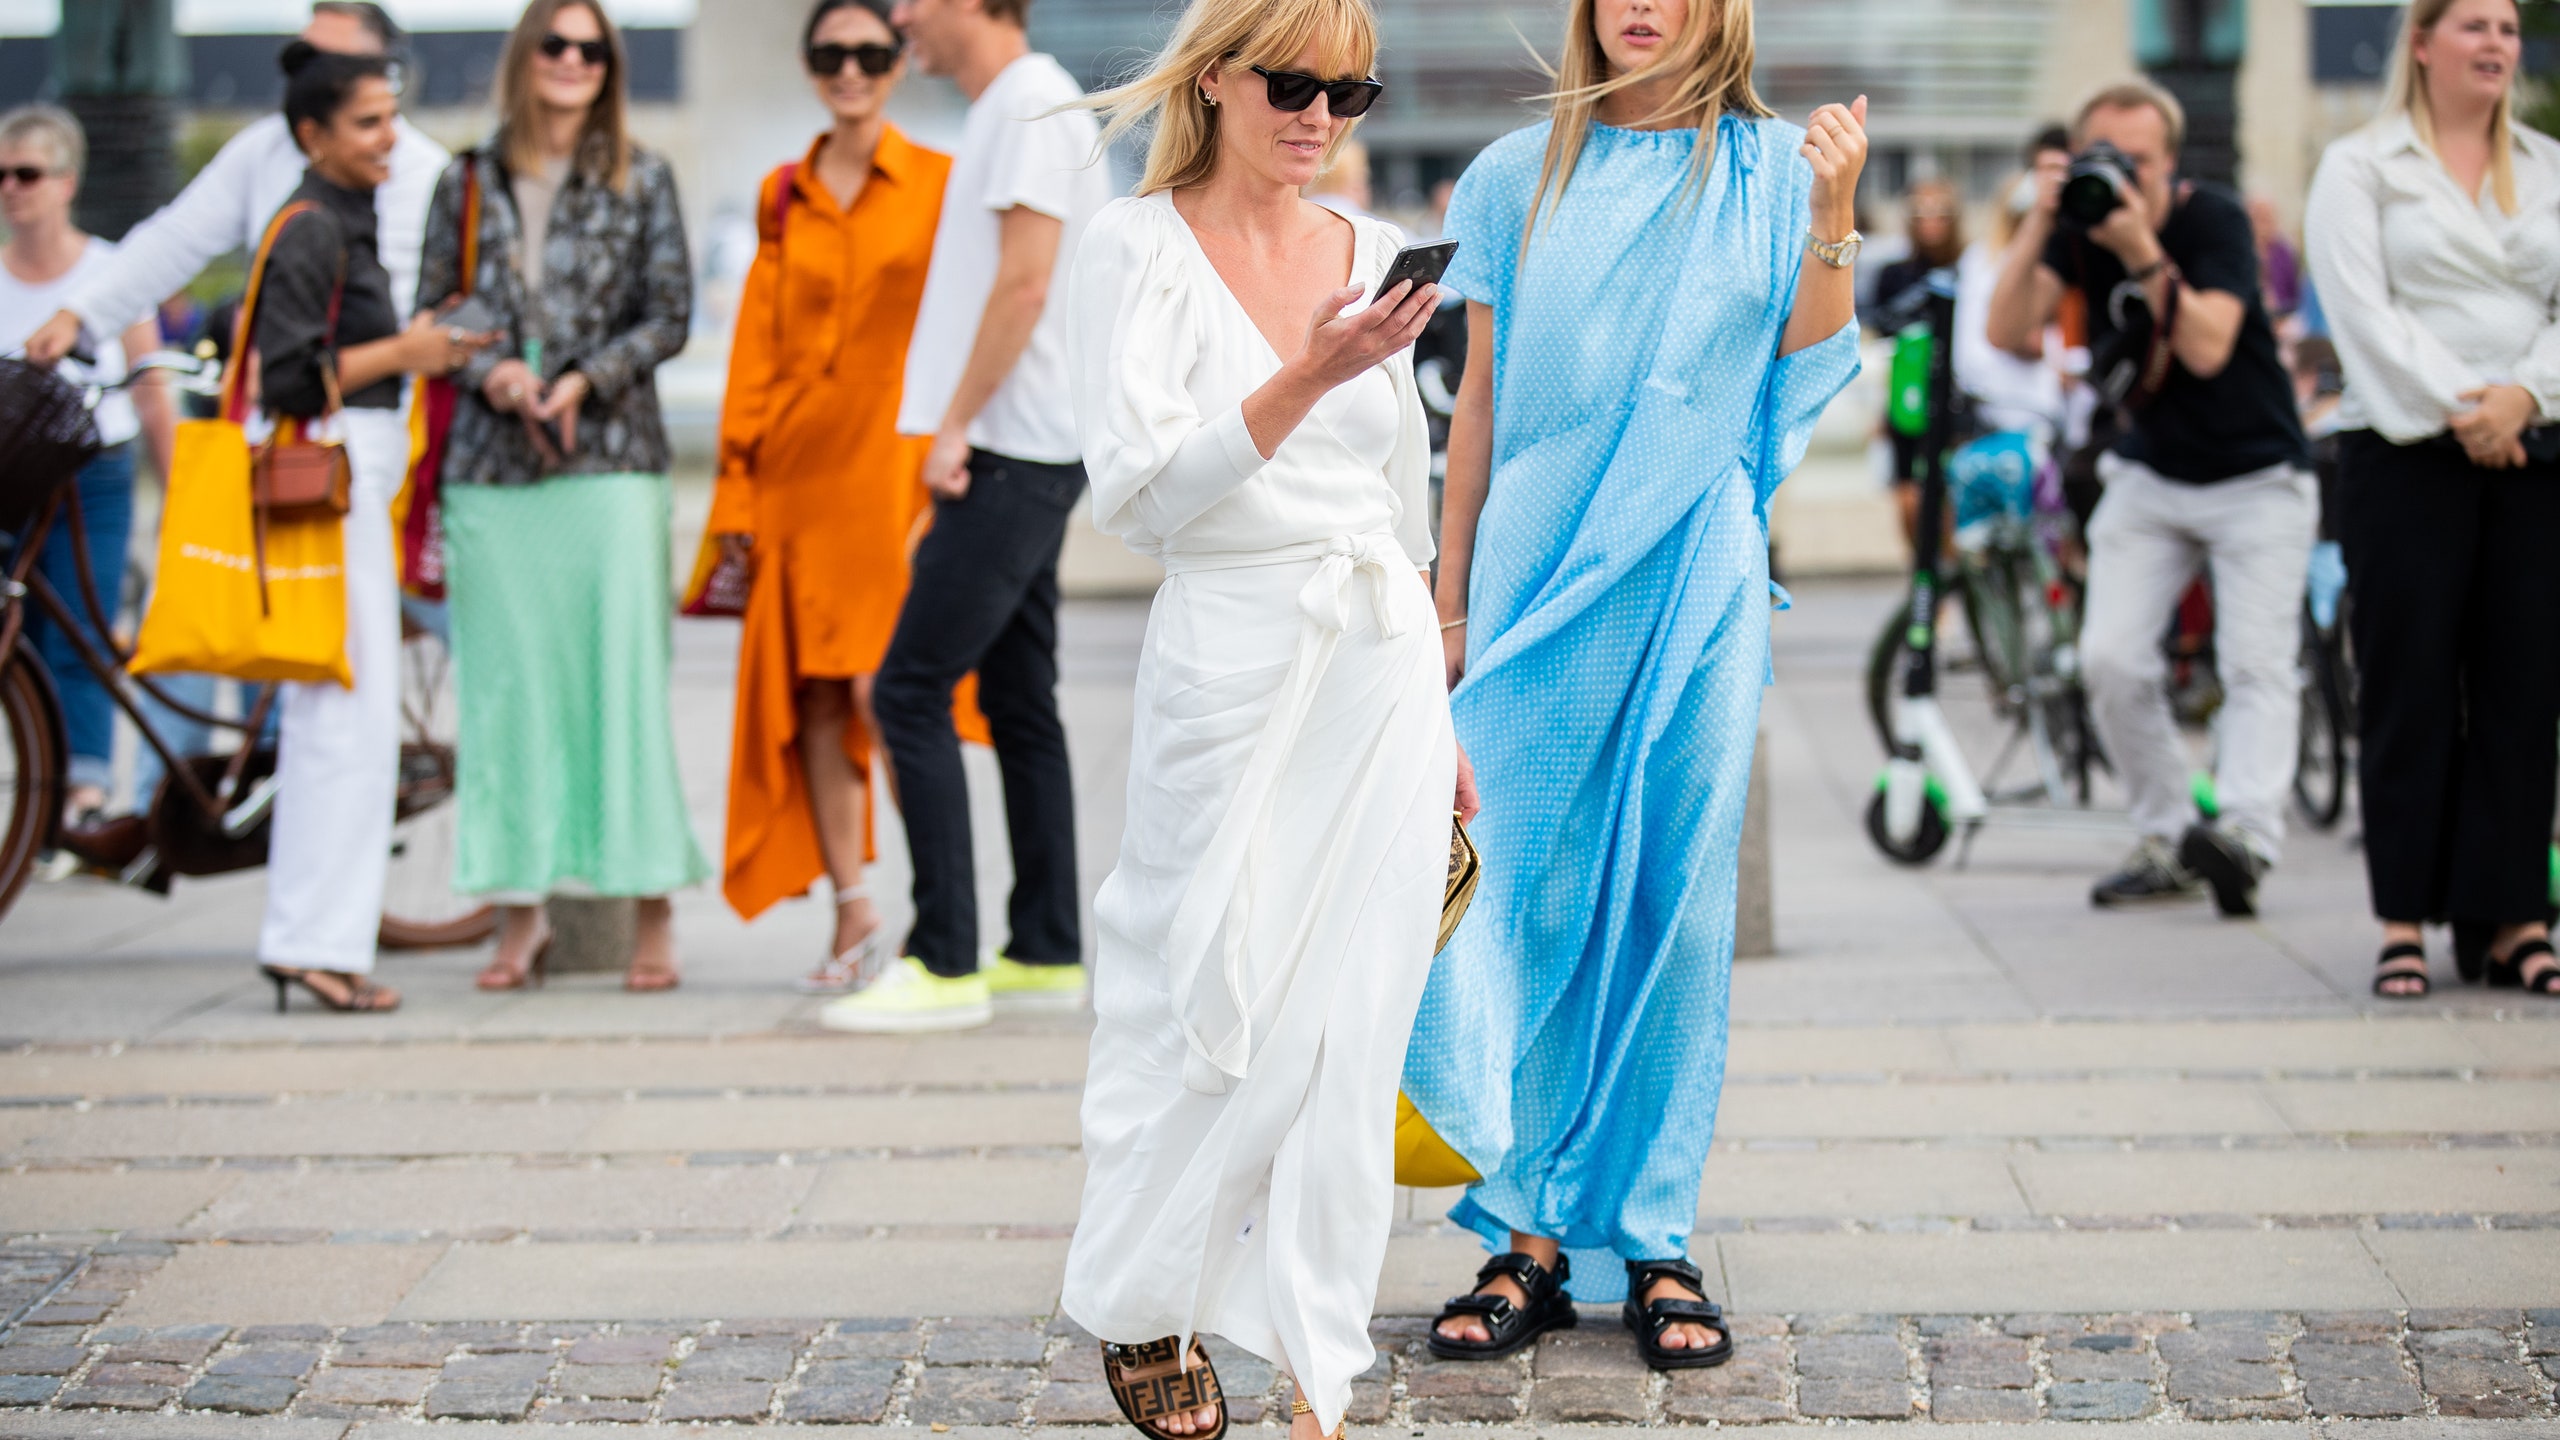 Сандалии на платформе — самый модный и удобный тренд этого лета